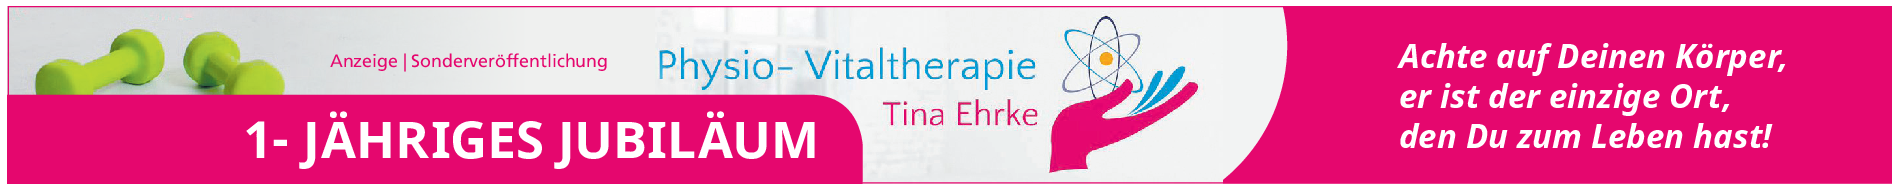 Physio-Vitaltherapie Tina Ehrke: Ein Team mit Ideen, die guttun